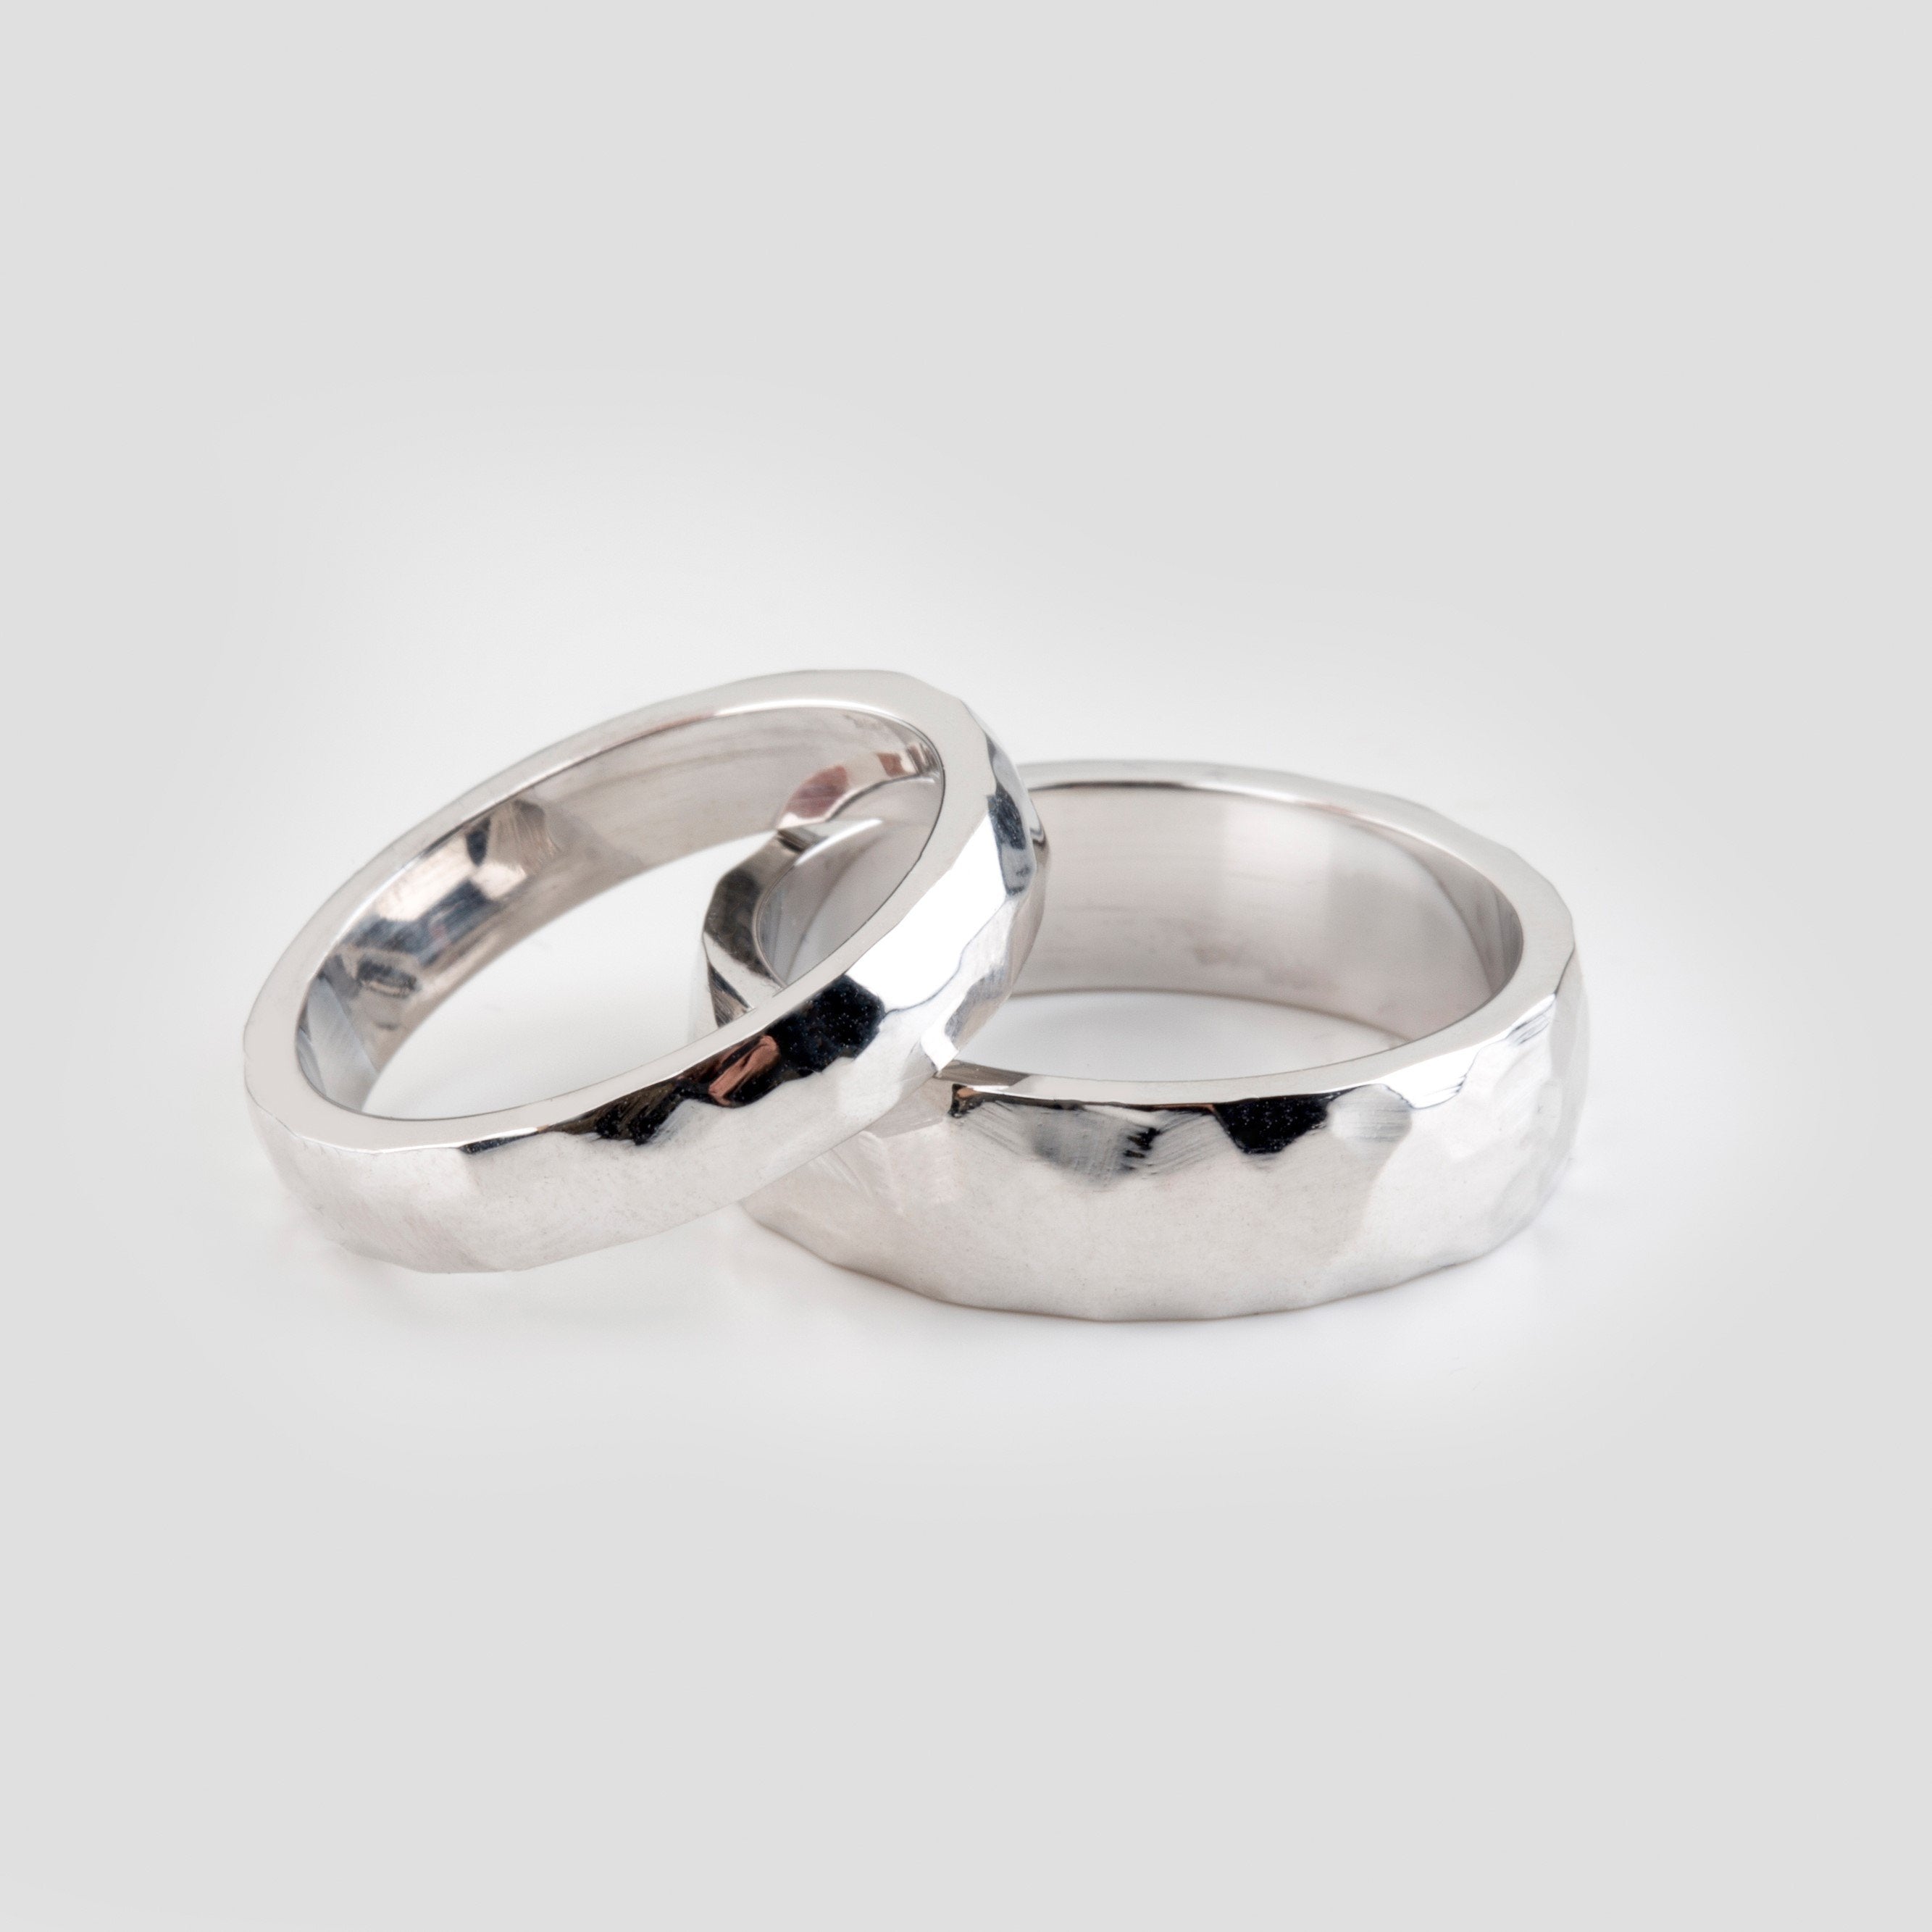 WEDDING BAND SET - Danelian Jewelry